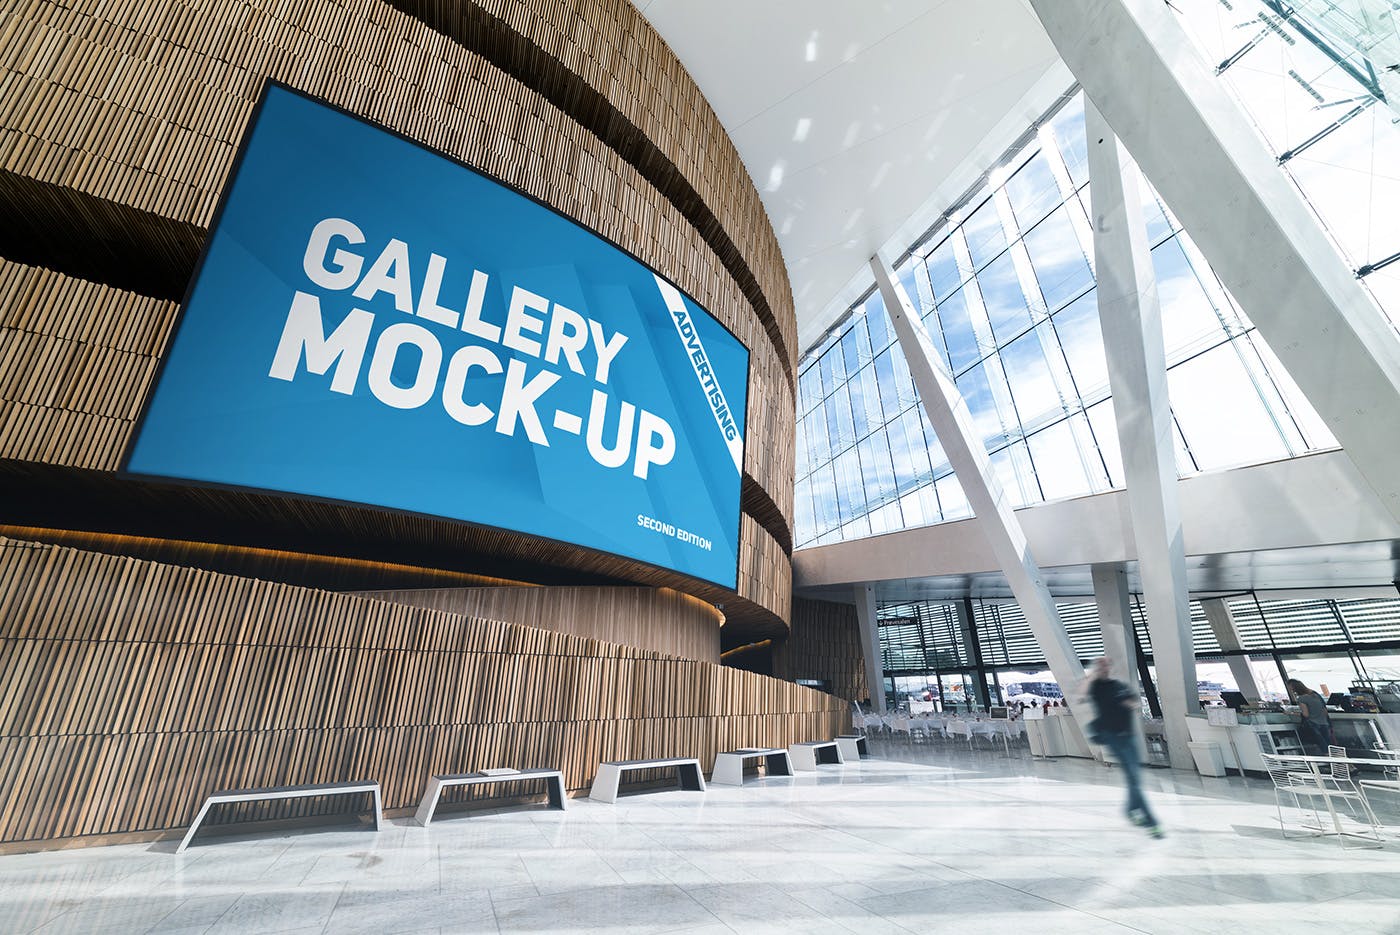 展厅画廊巨幅海报设计图样机蚂蚁素材精选模板v3 Gallery Poster Mockup v.3插图(1)